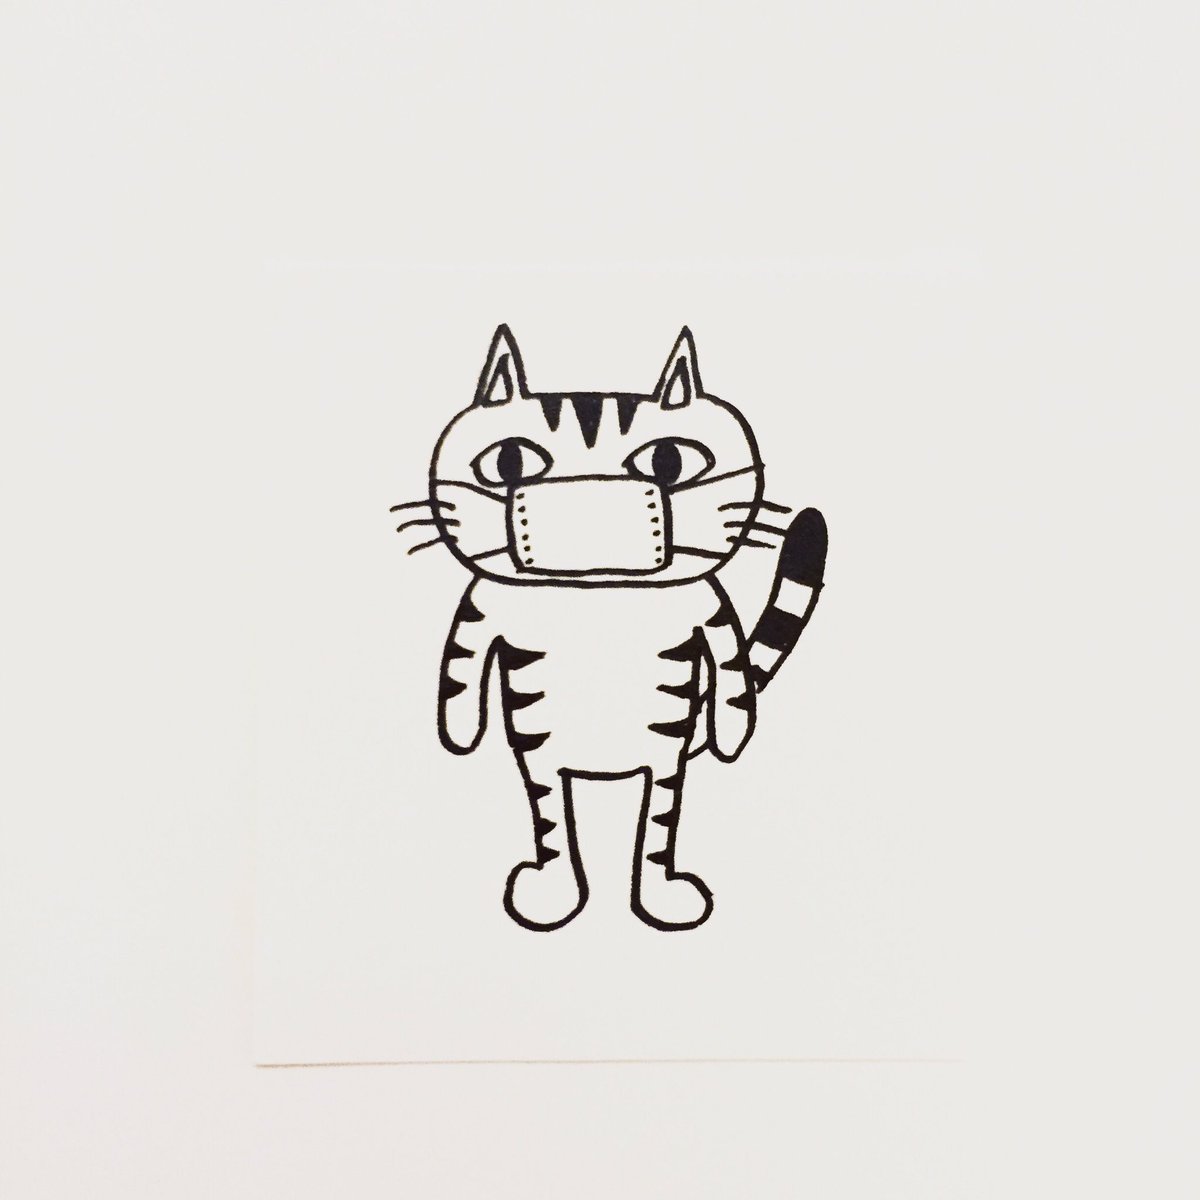 肌子 Pa Twitter 今日のイラストはコレ ｪ マスクをつける猫 イラスト 猫 ネコ ねこ オリジナル ペン画 アナログ画 絵 猫の絵 白黒猫 キジトラ猫 T Co 6ivngbs7yz Twitter